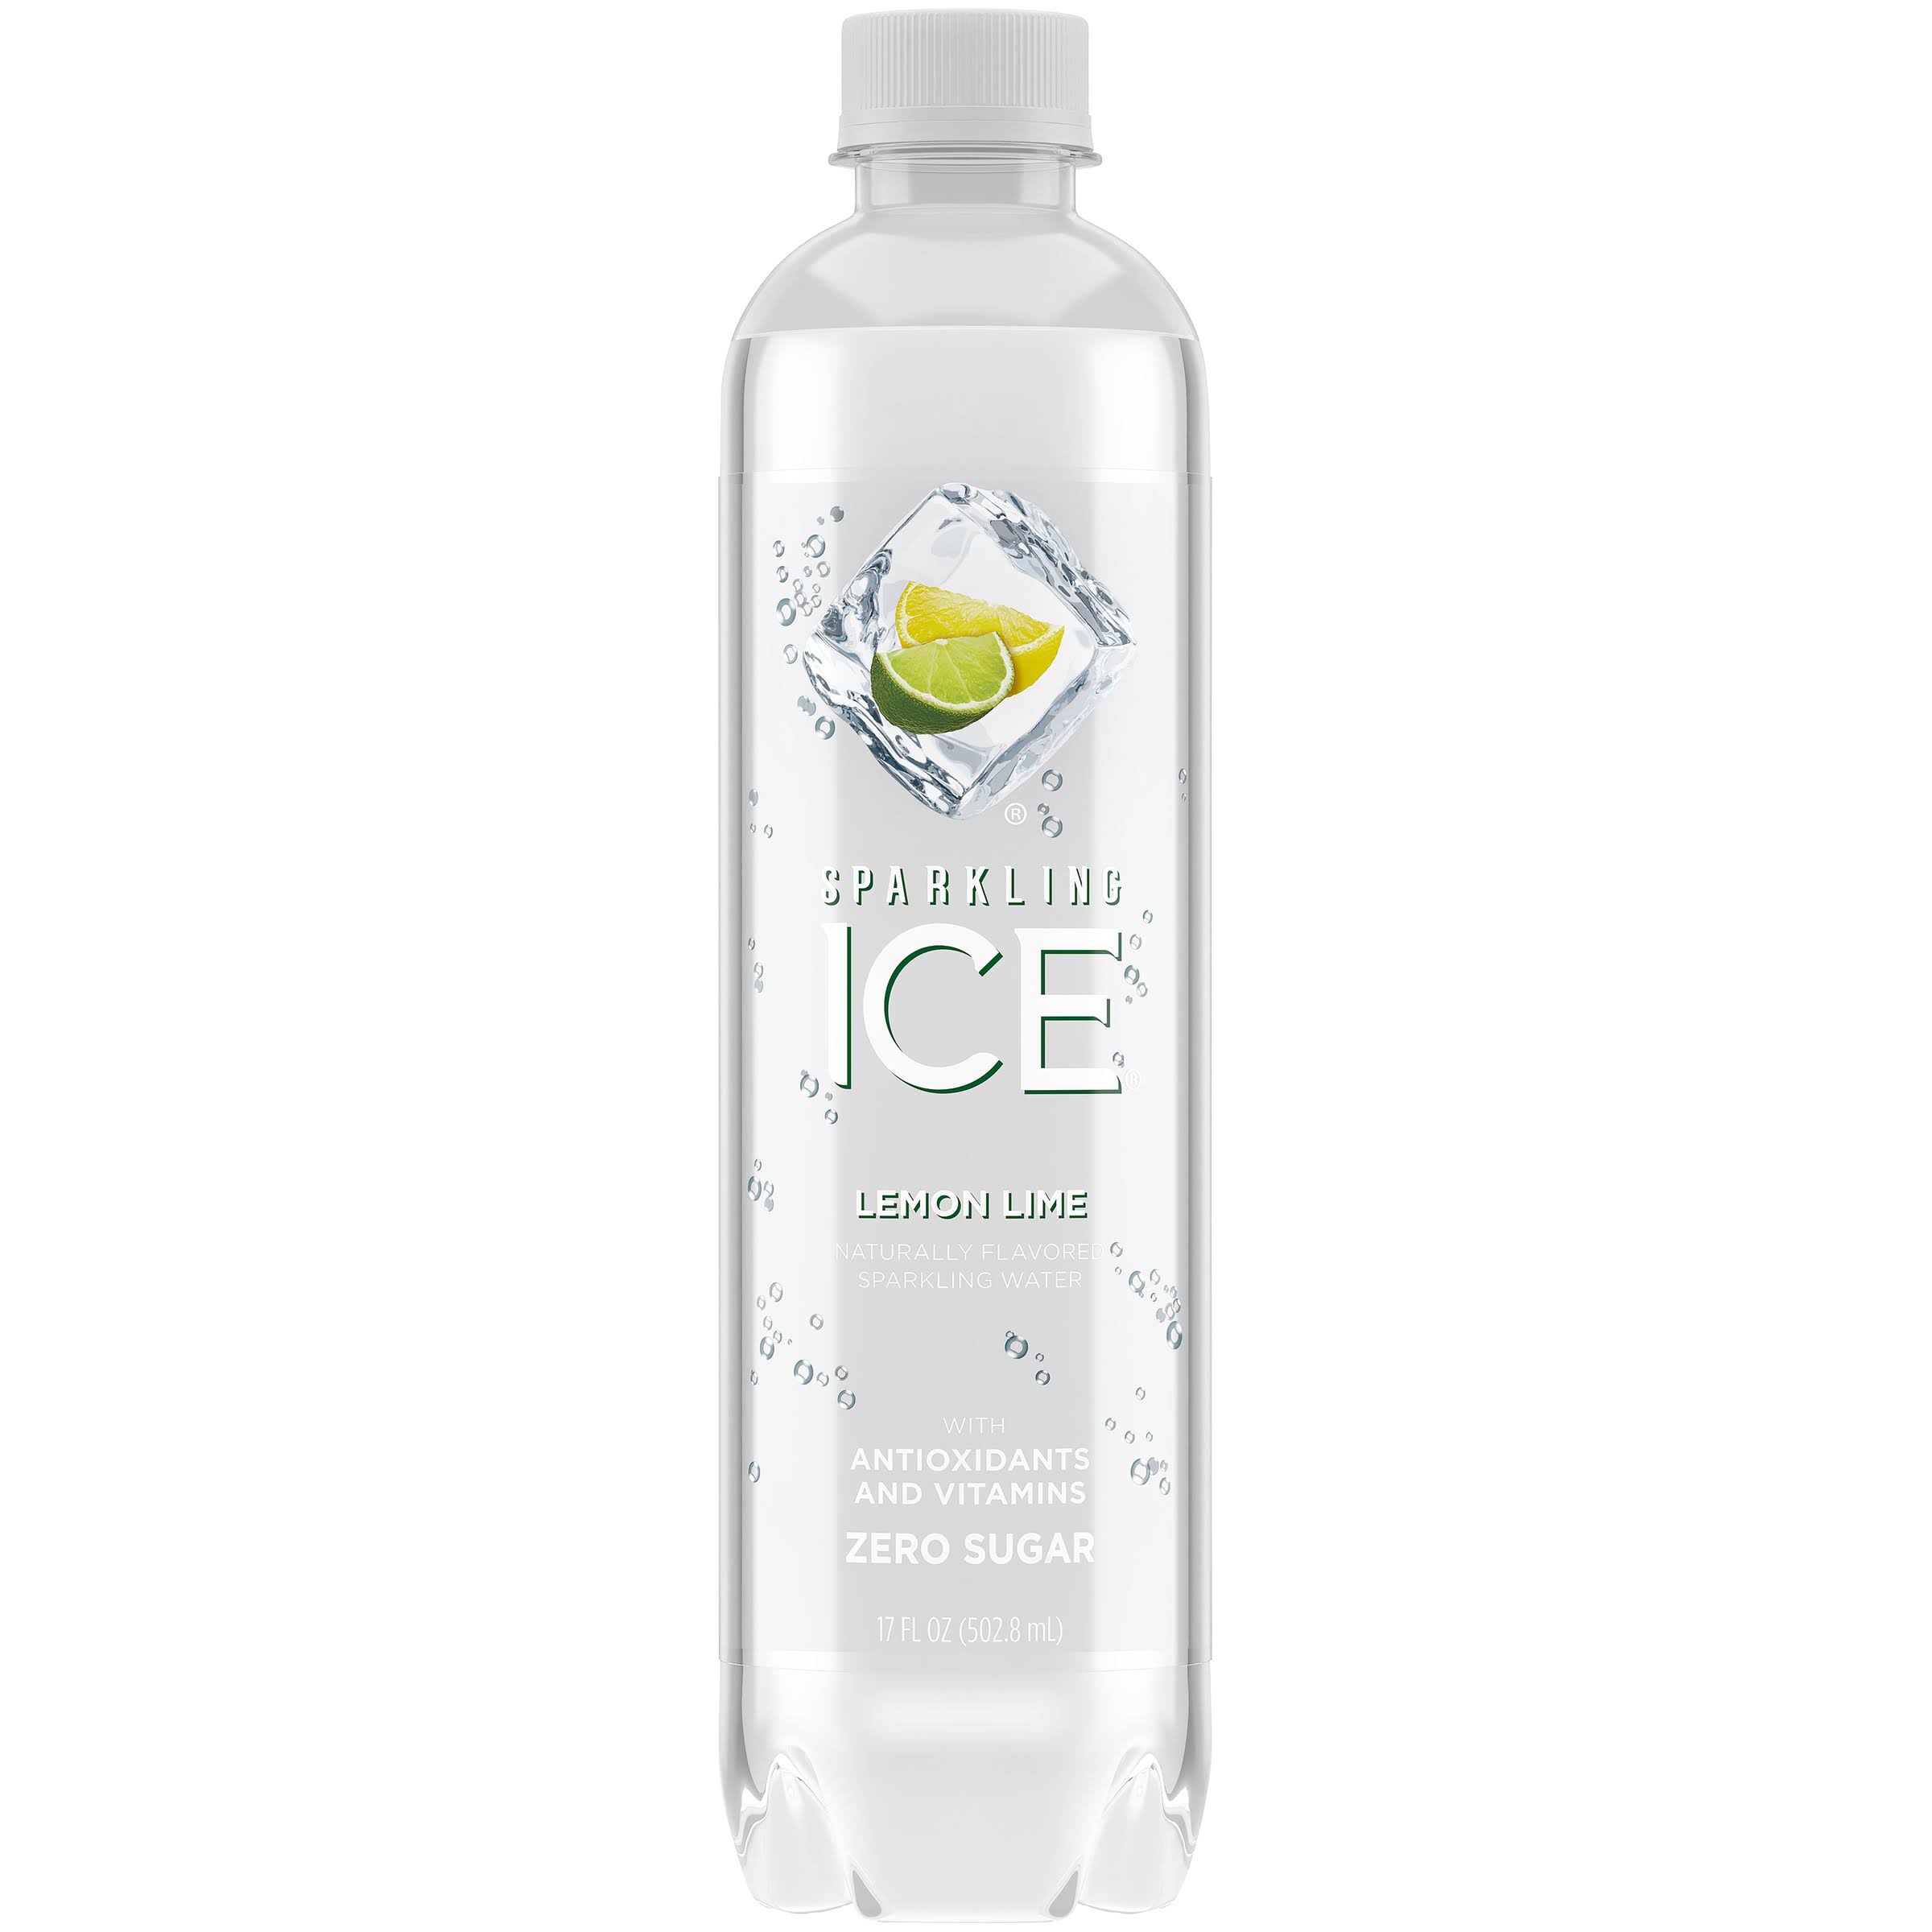 Sparkling Ice Zero Calories Spring Water - Lemon Lime, 17oz